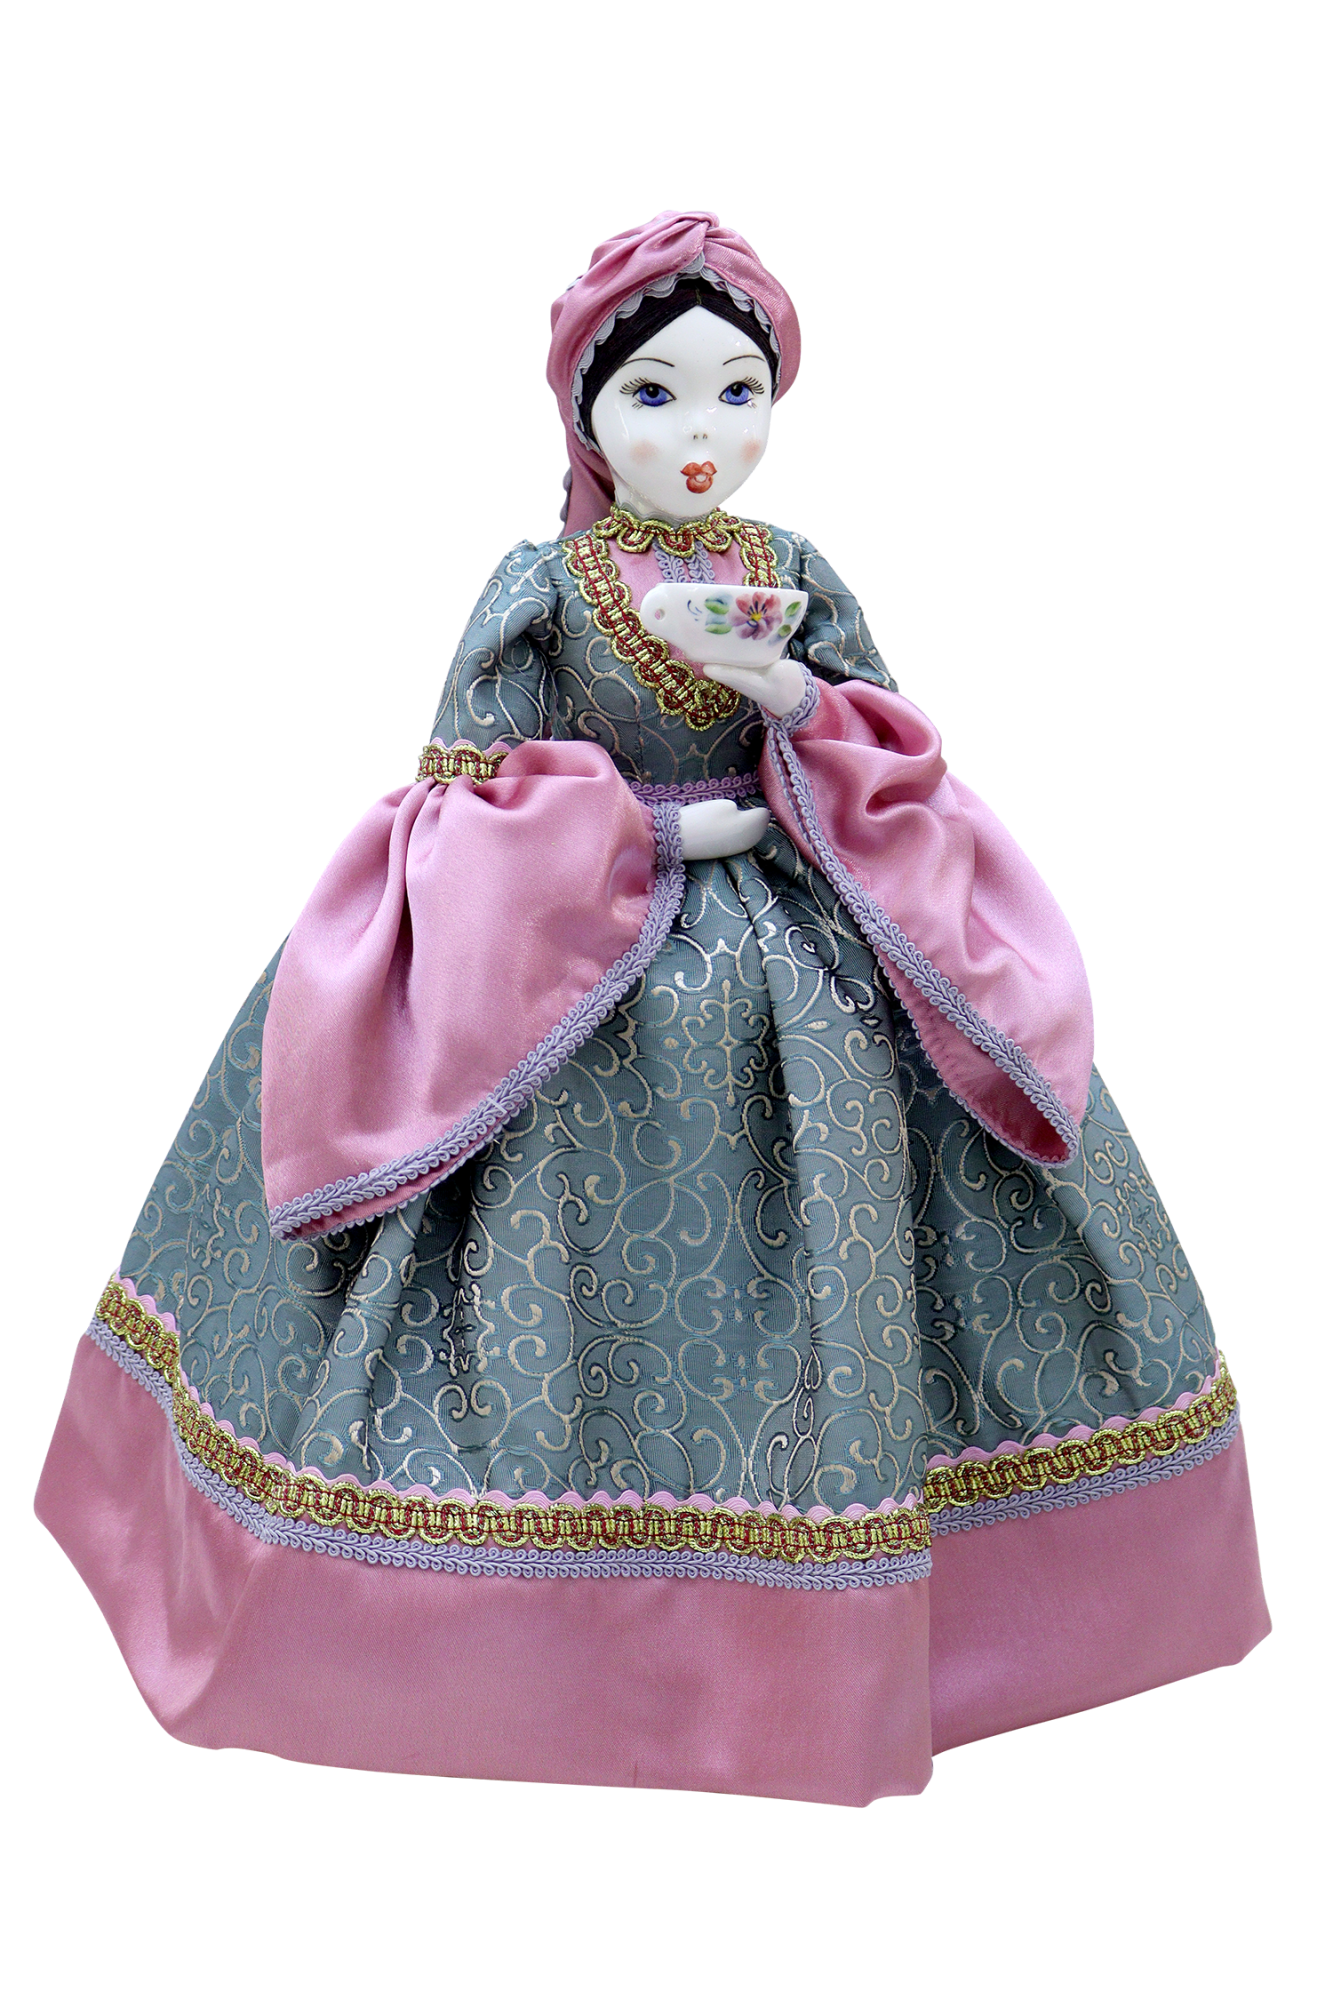 Пелагея сувенирная кукла-грелка на чайник по выгодной цене из Семикаракорской керамики